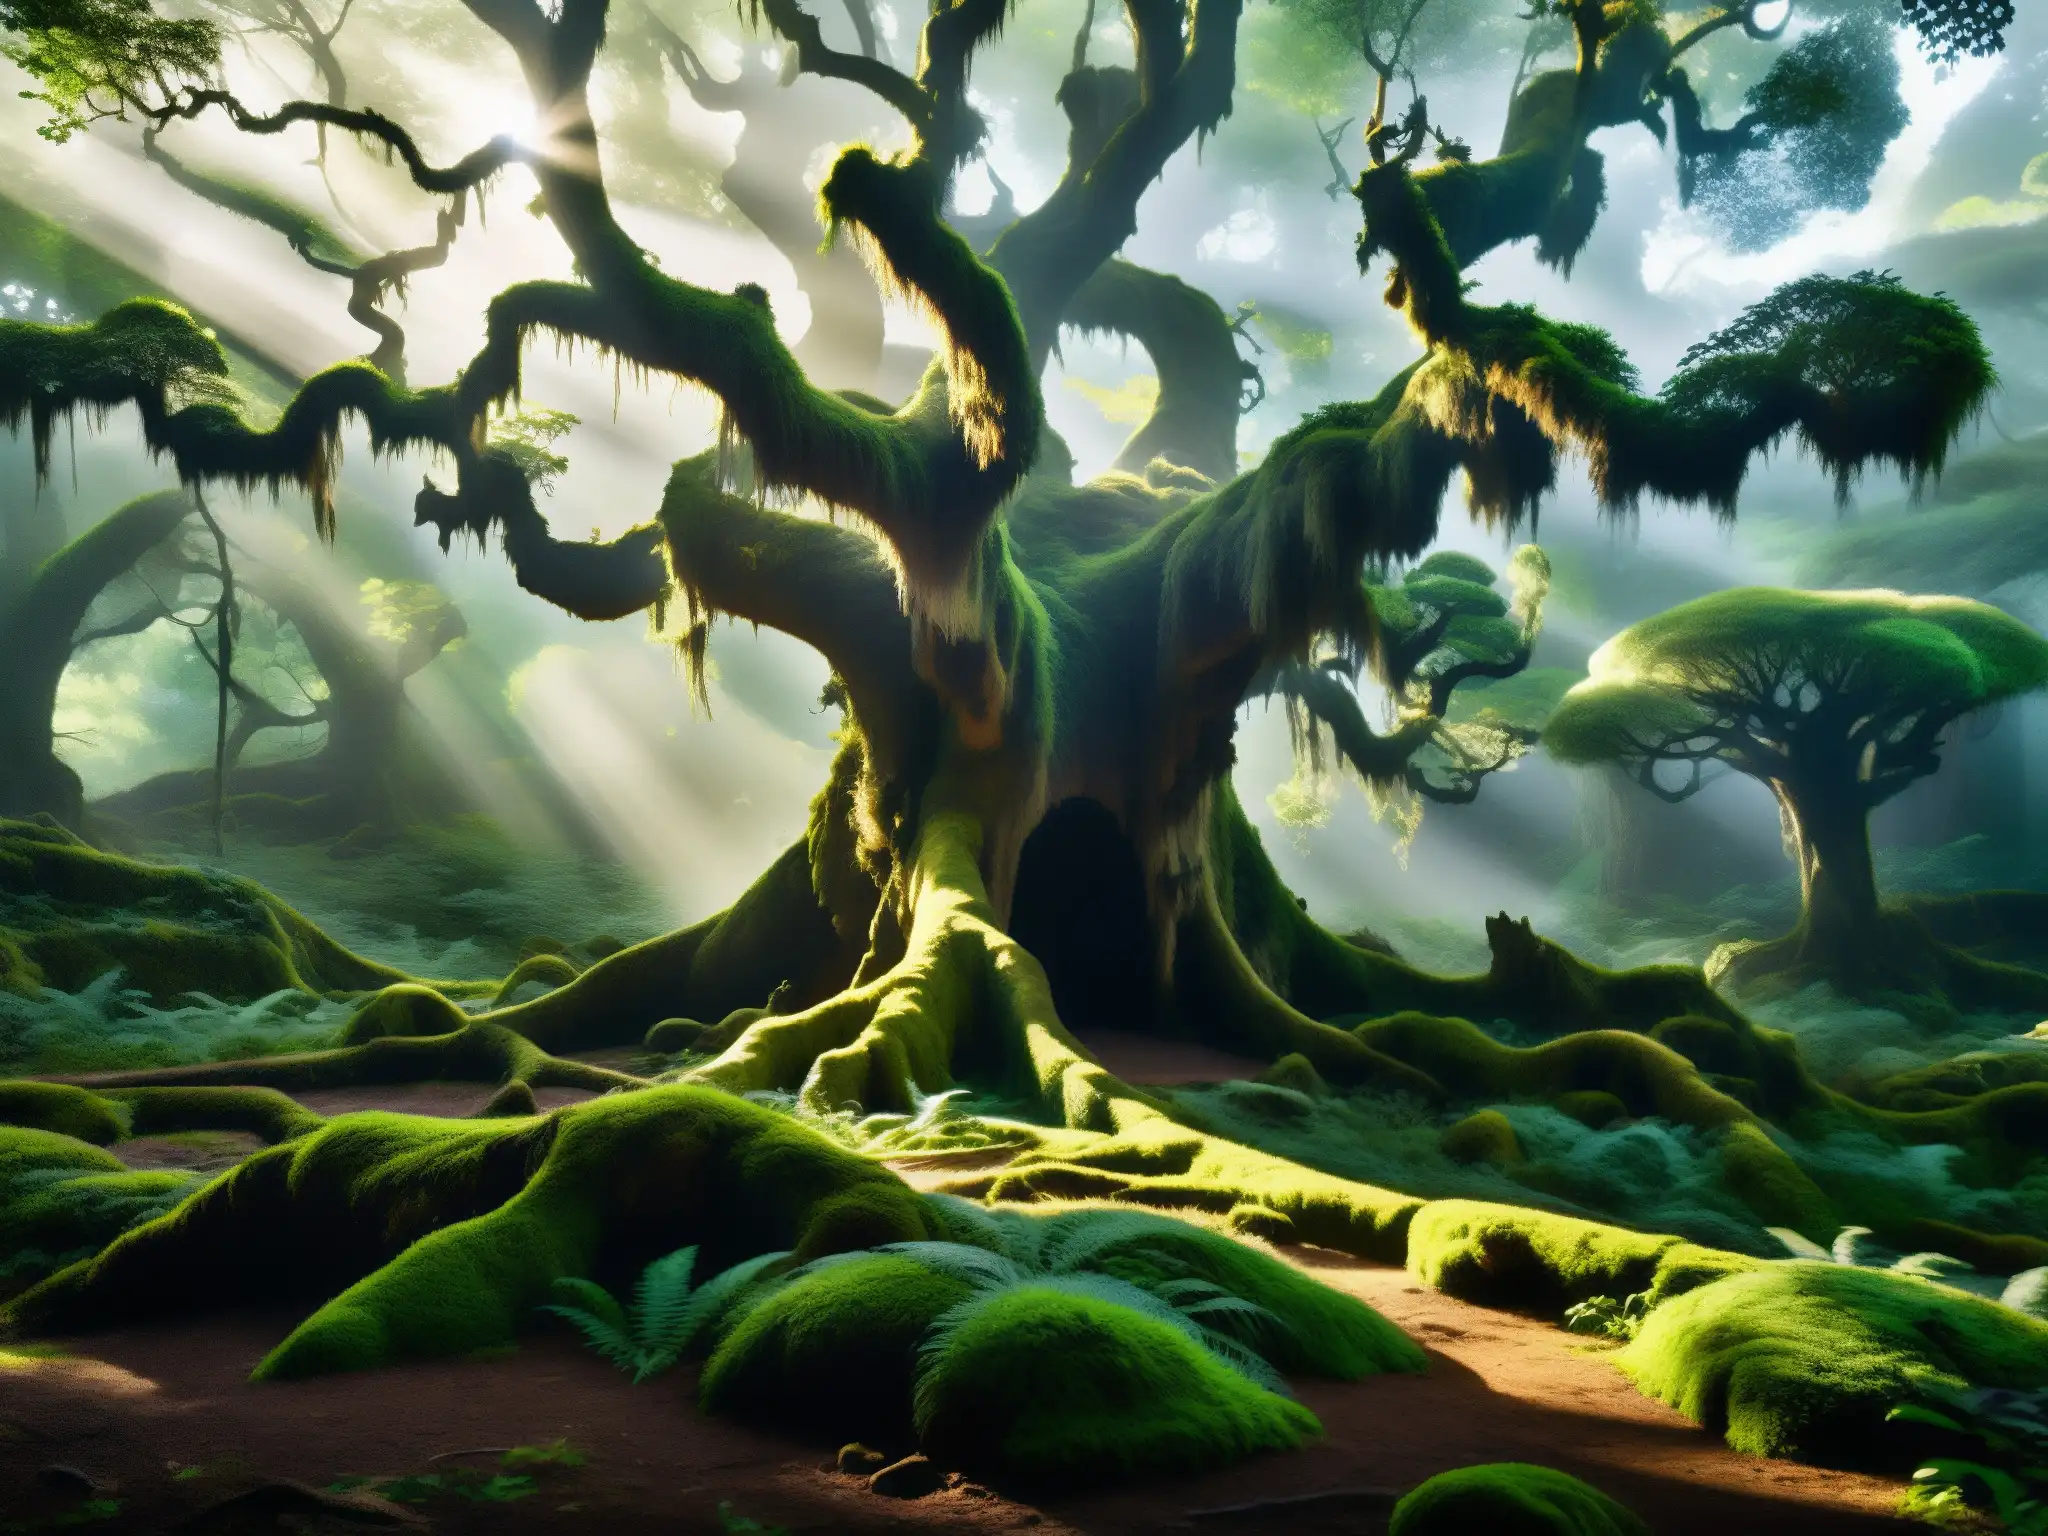 Escena etérea en el bosque de Sanjay Van, con árboles antiguos y misterio entre los rayos de sol y musgo, evocando mitos y leyendas